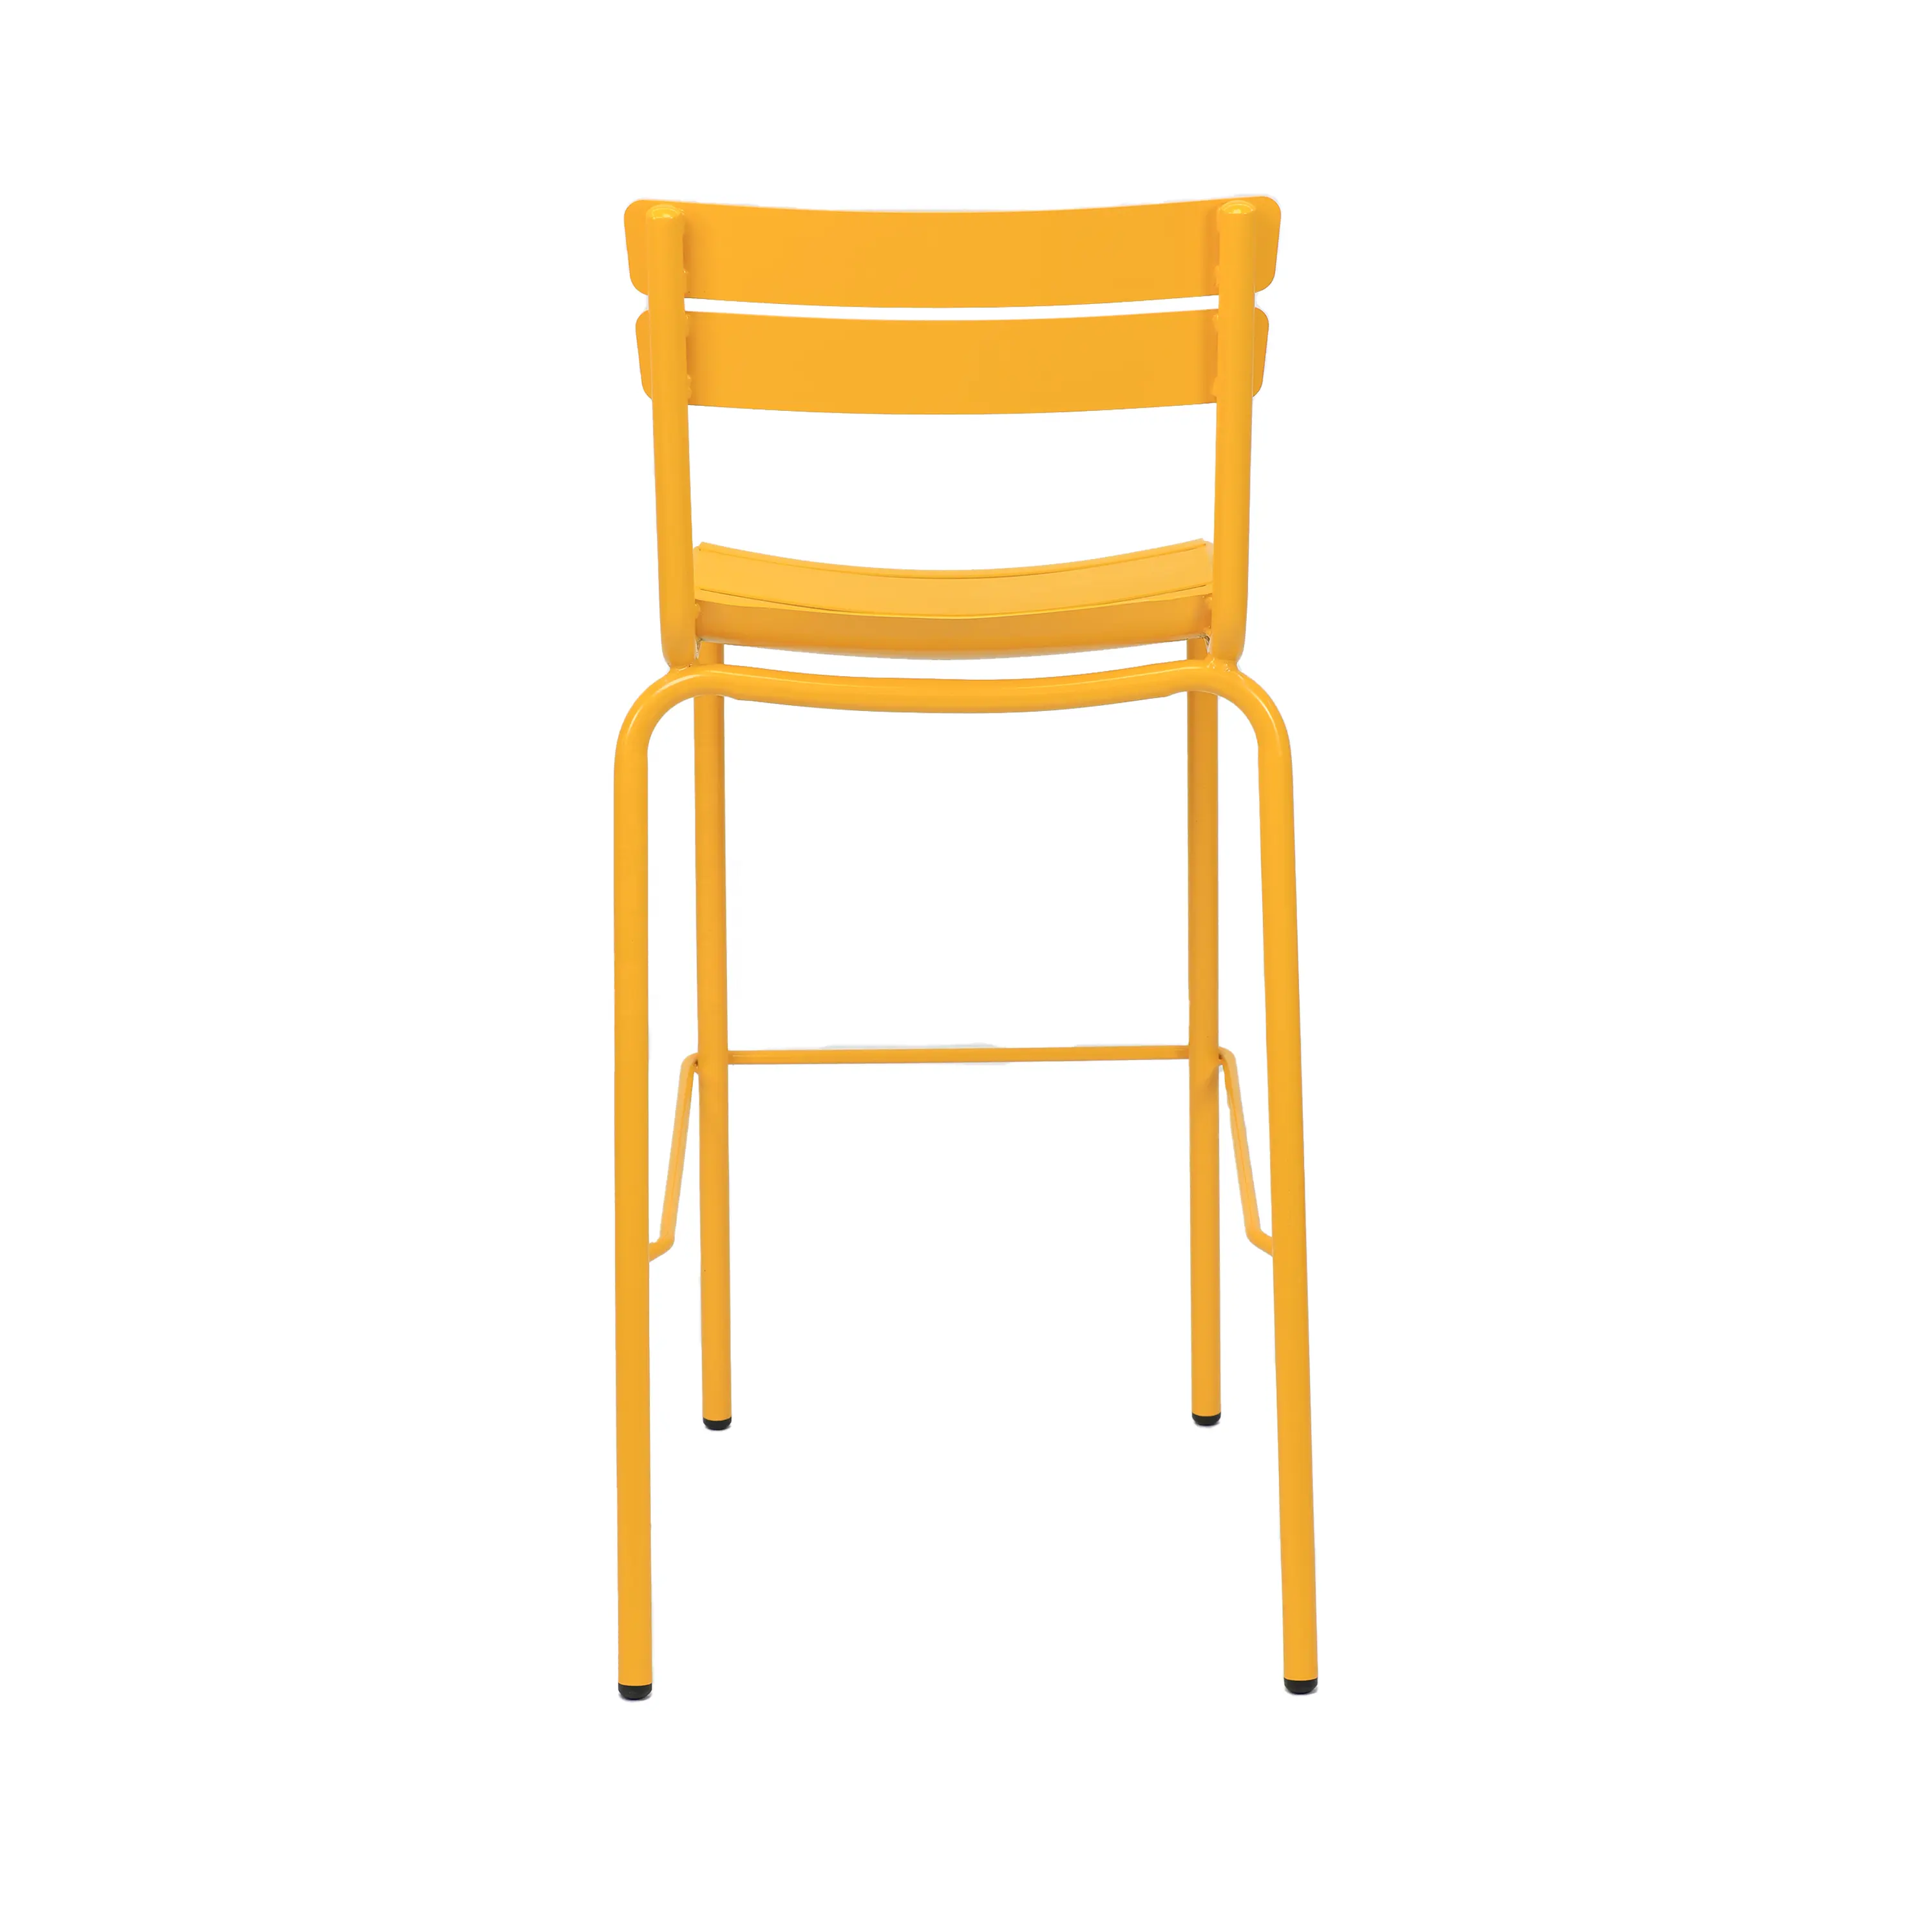 متعددة اللون لوكسمبورغ بار البراز المعادن عالية كرسي تكويم كرسي طويل الساق ل في الهواء الطلق مطعم و حزب تأجير